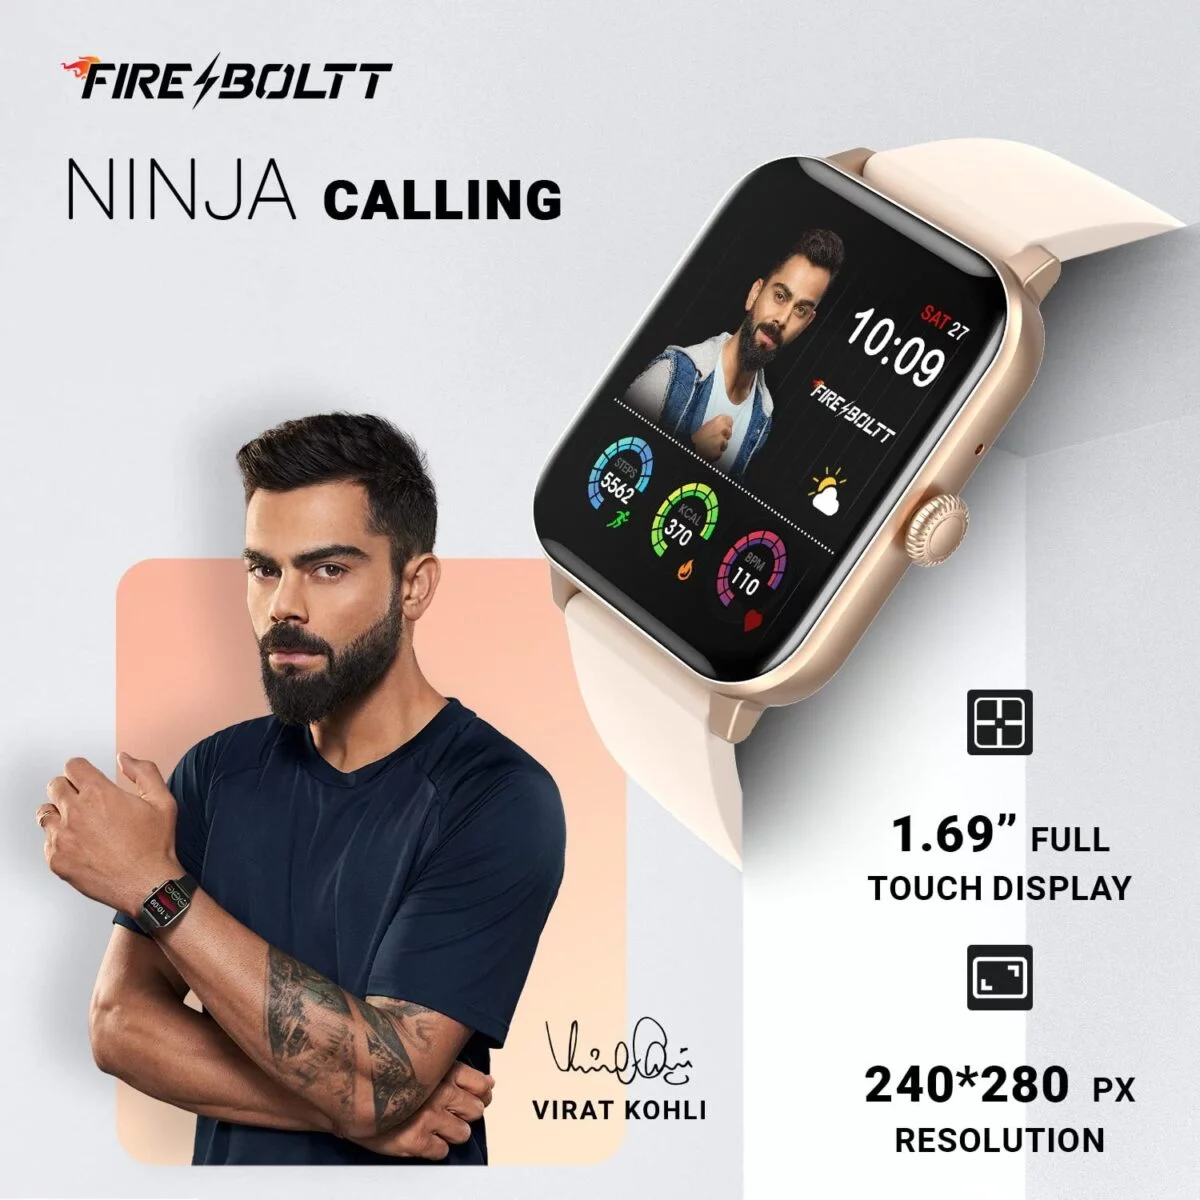 Fire boltt ninja calling smartwatch 2